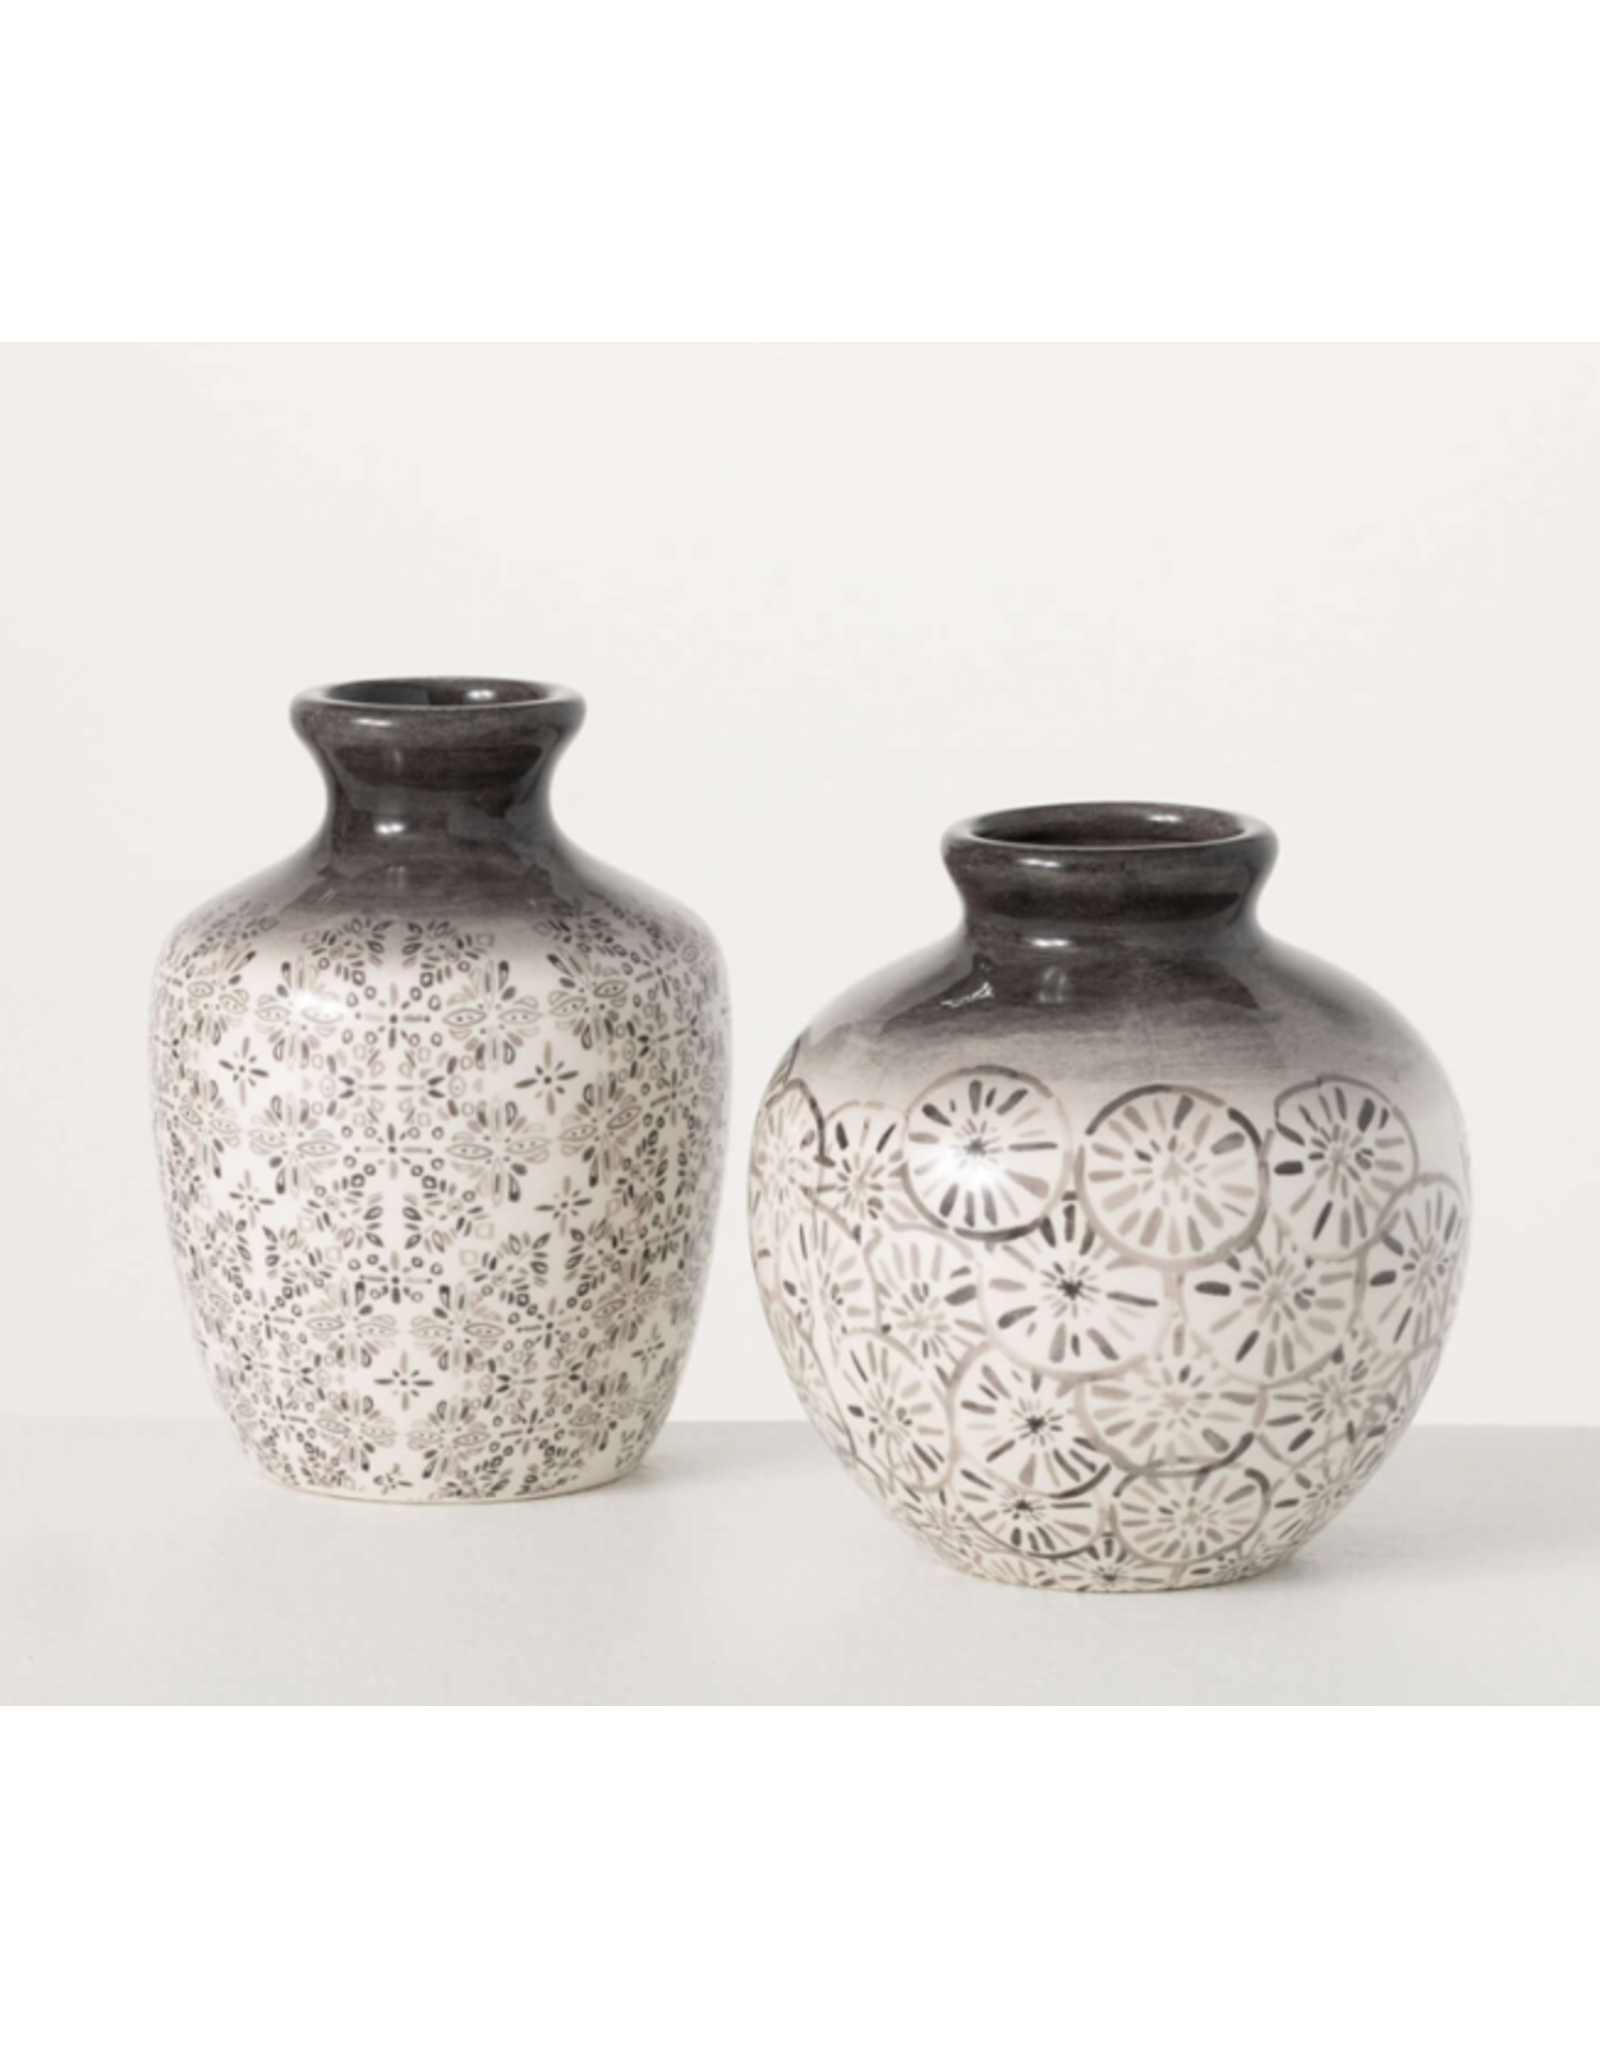 Sullivans Patterned Grey Burst Vases